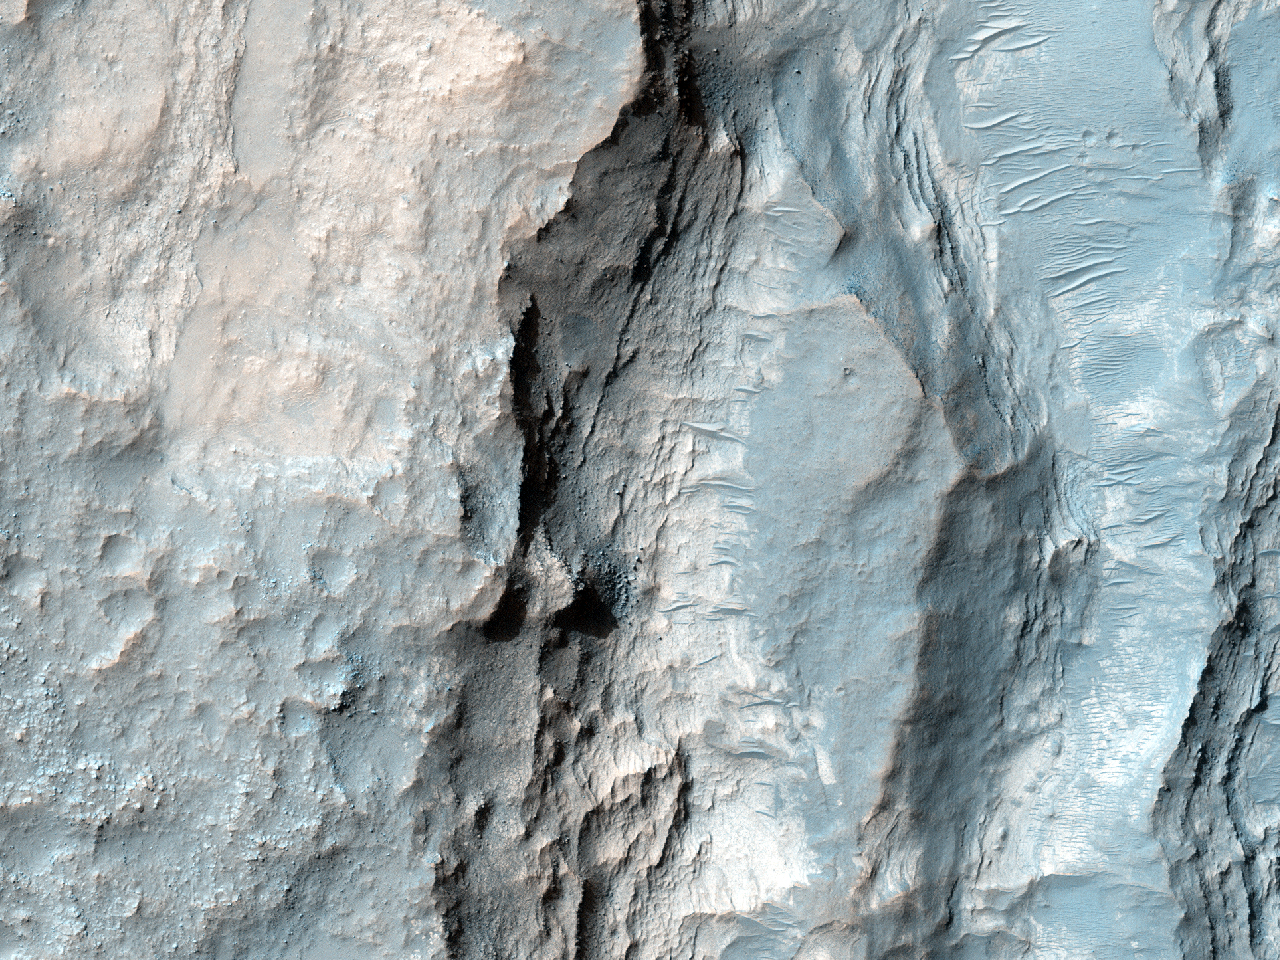 Possibile terreno ricco di fillosilicati nel nord-ovest di Hellas Planitia